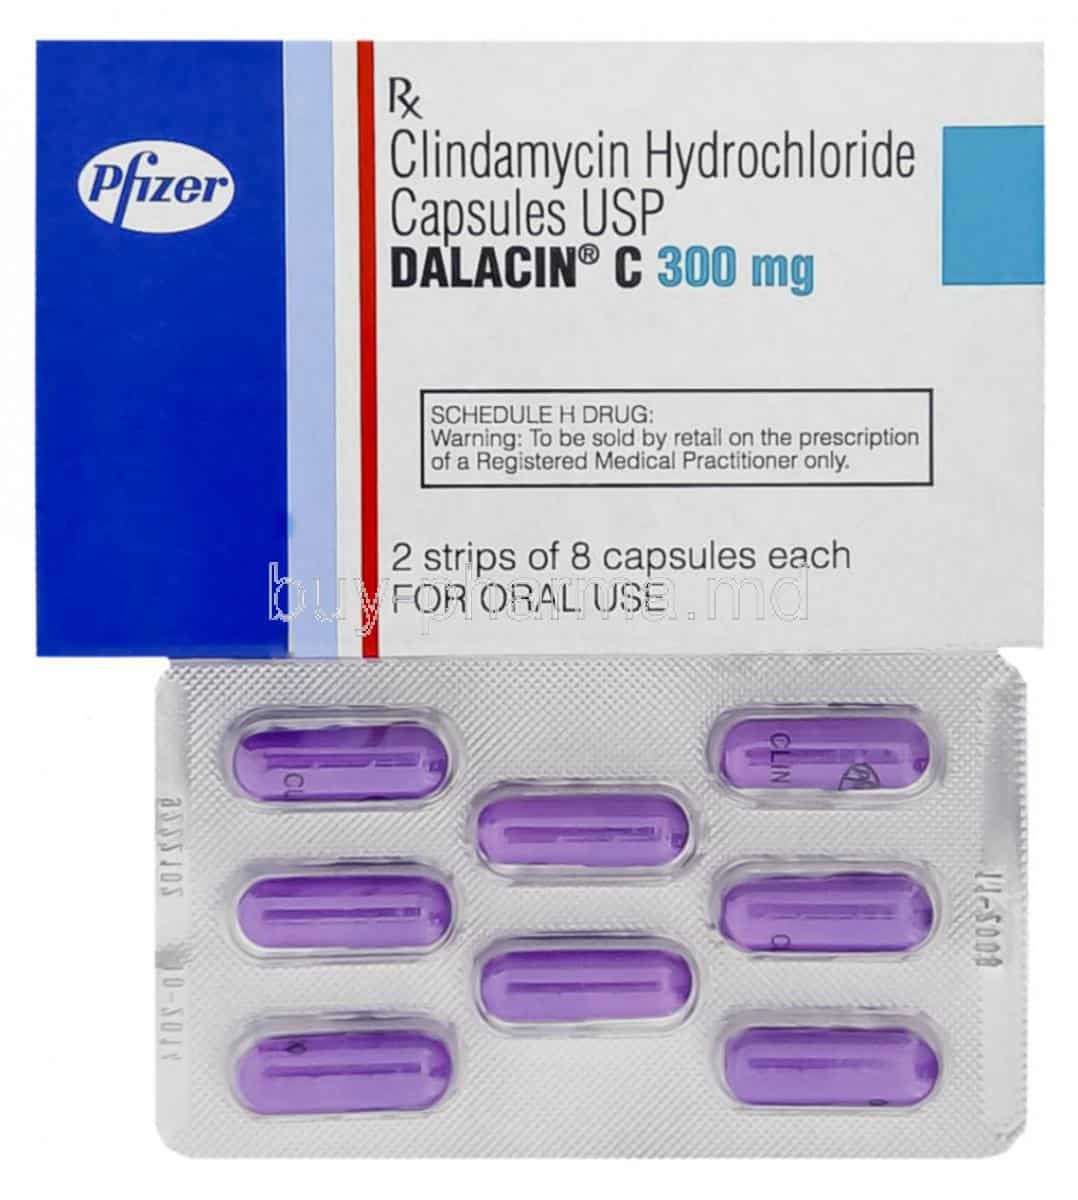 Buy Dalacin C, Clindamycin ( Generic Cleocin ) Online